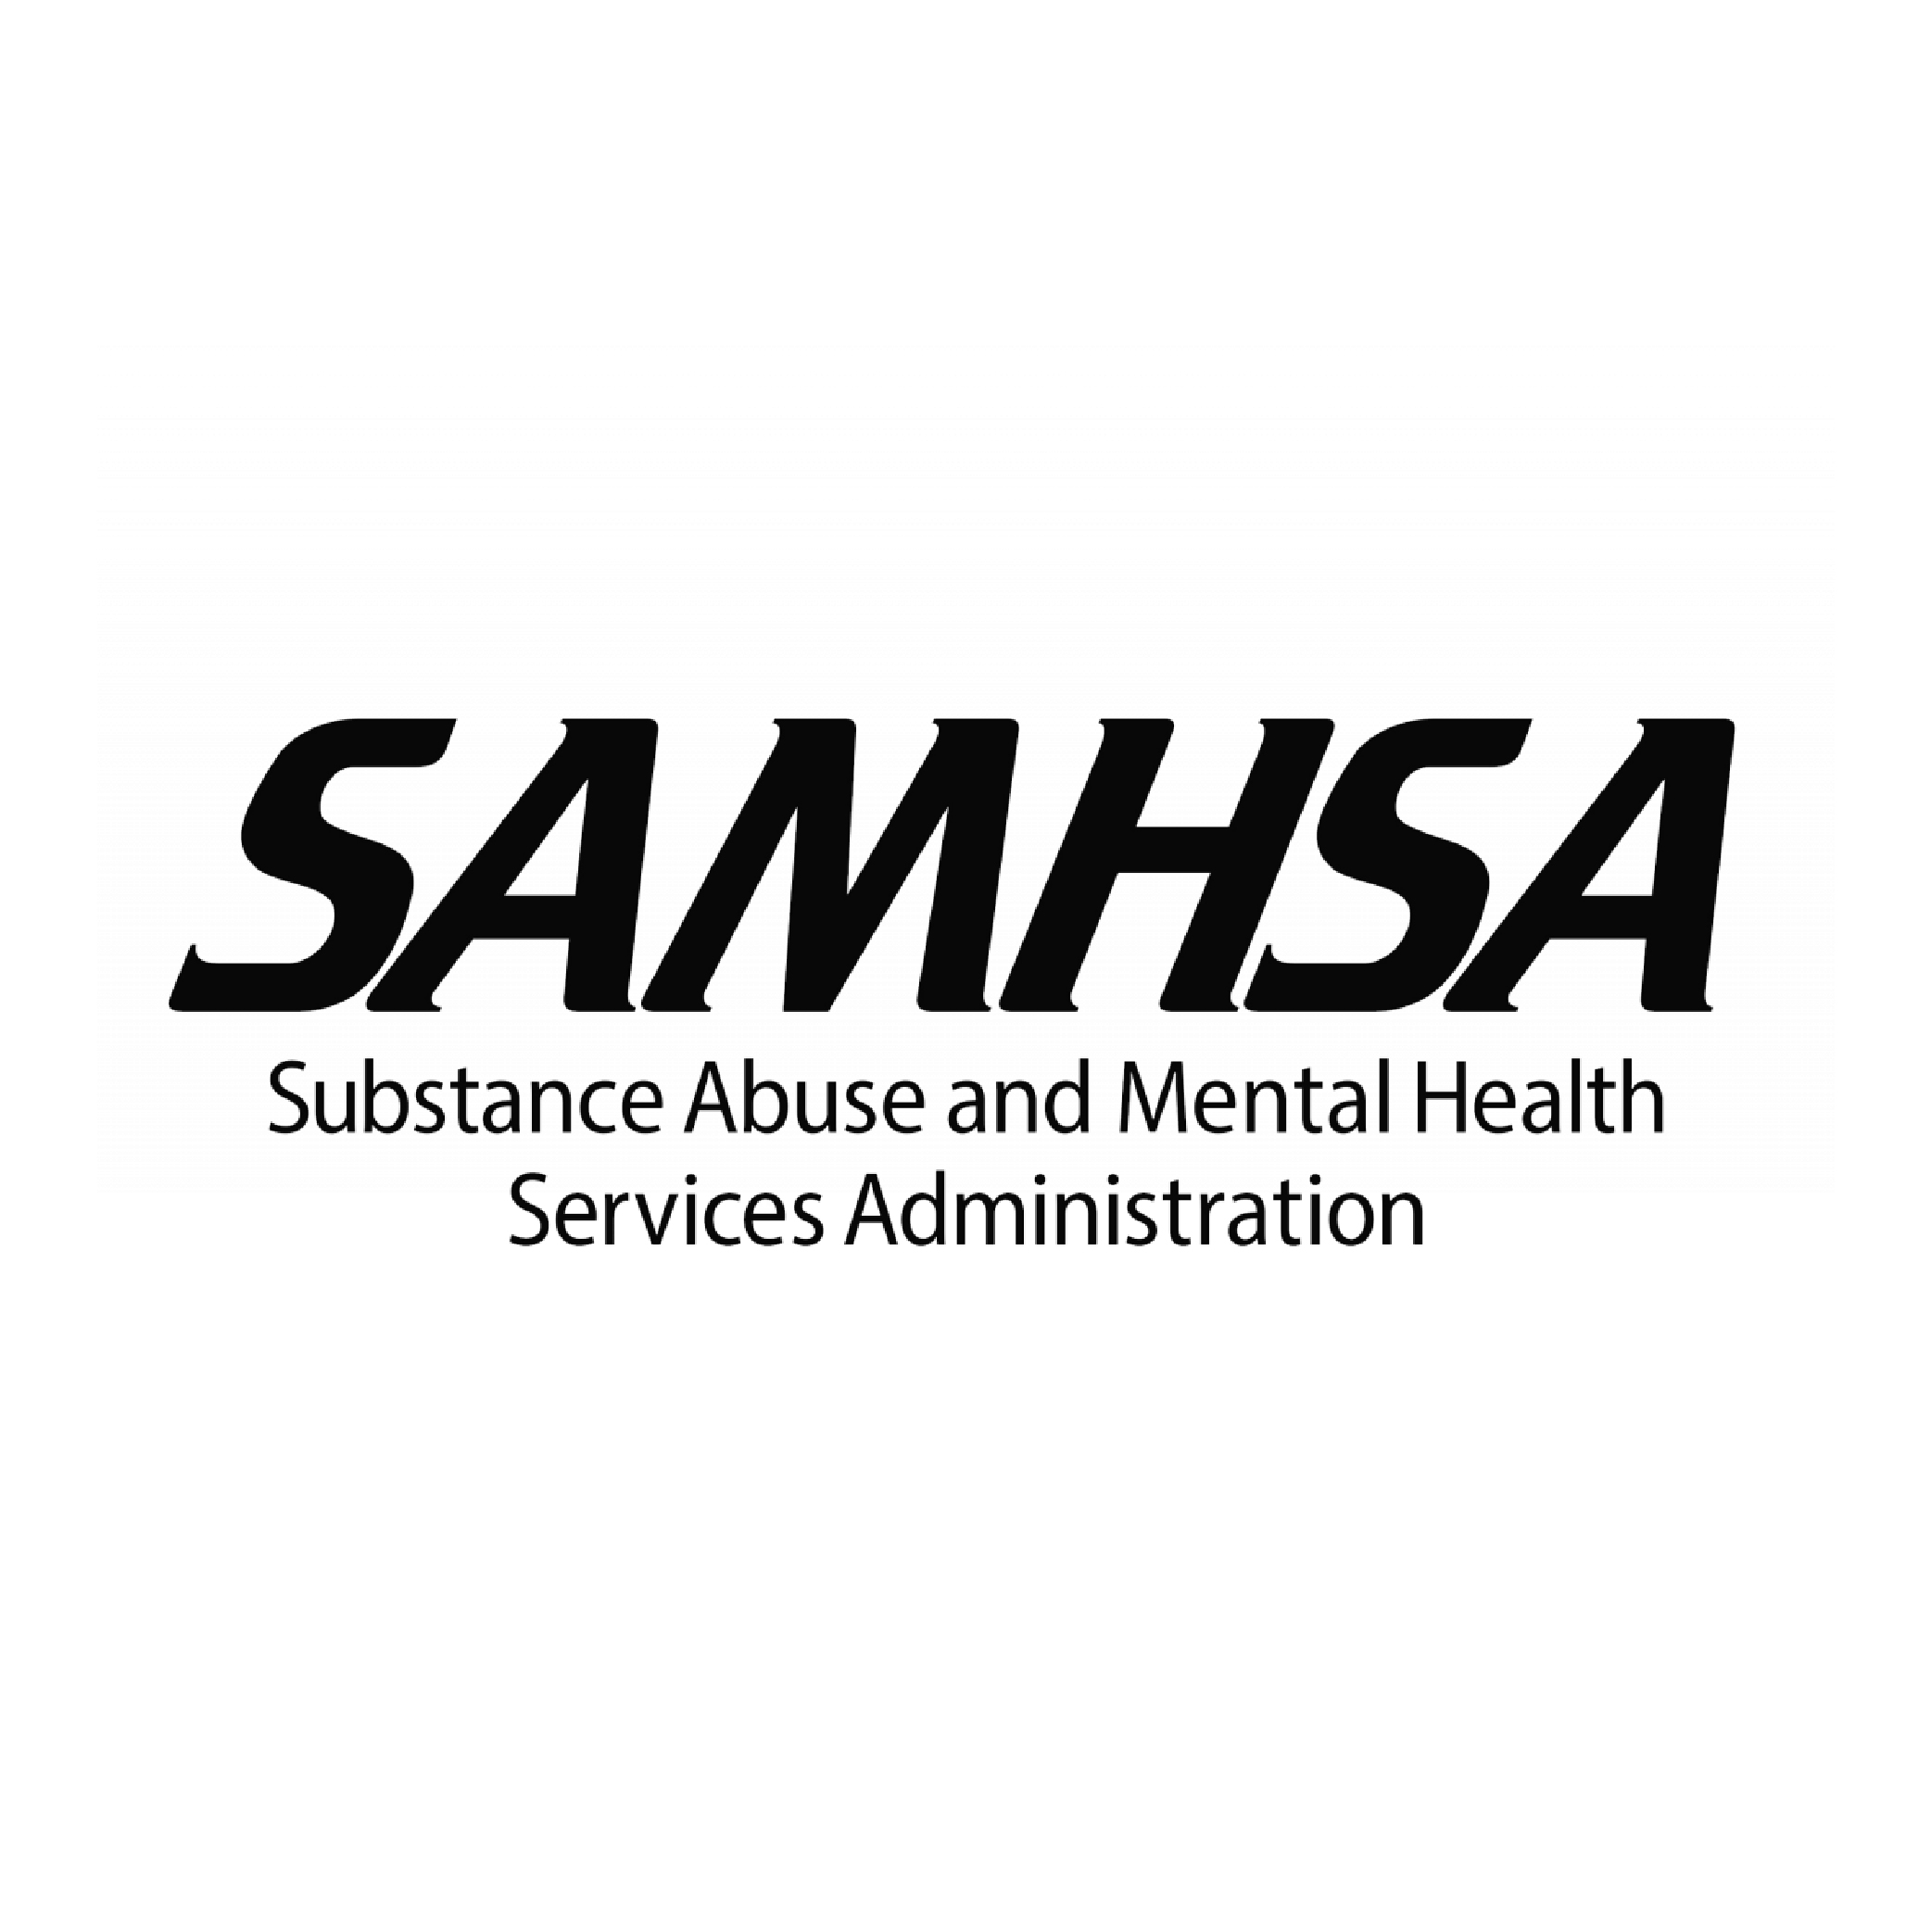 Logotipo de la Administración de Servicios de Abuso de Sustancias y Salud Mental